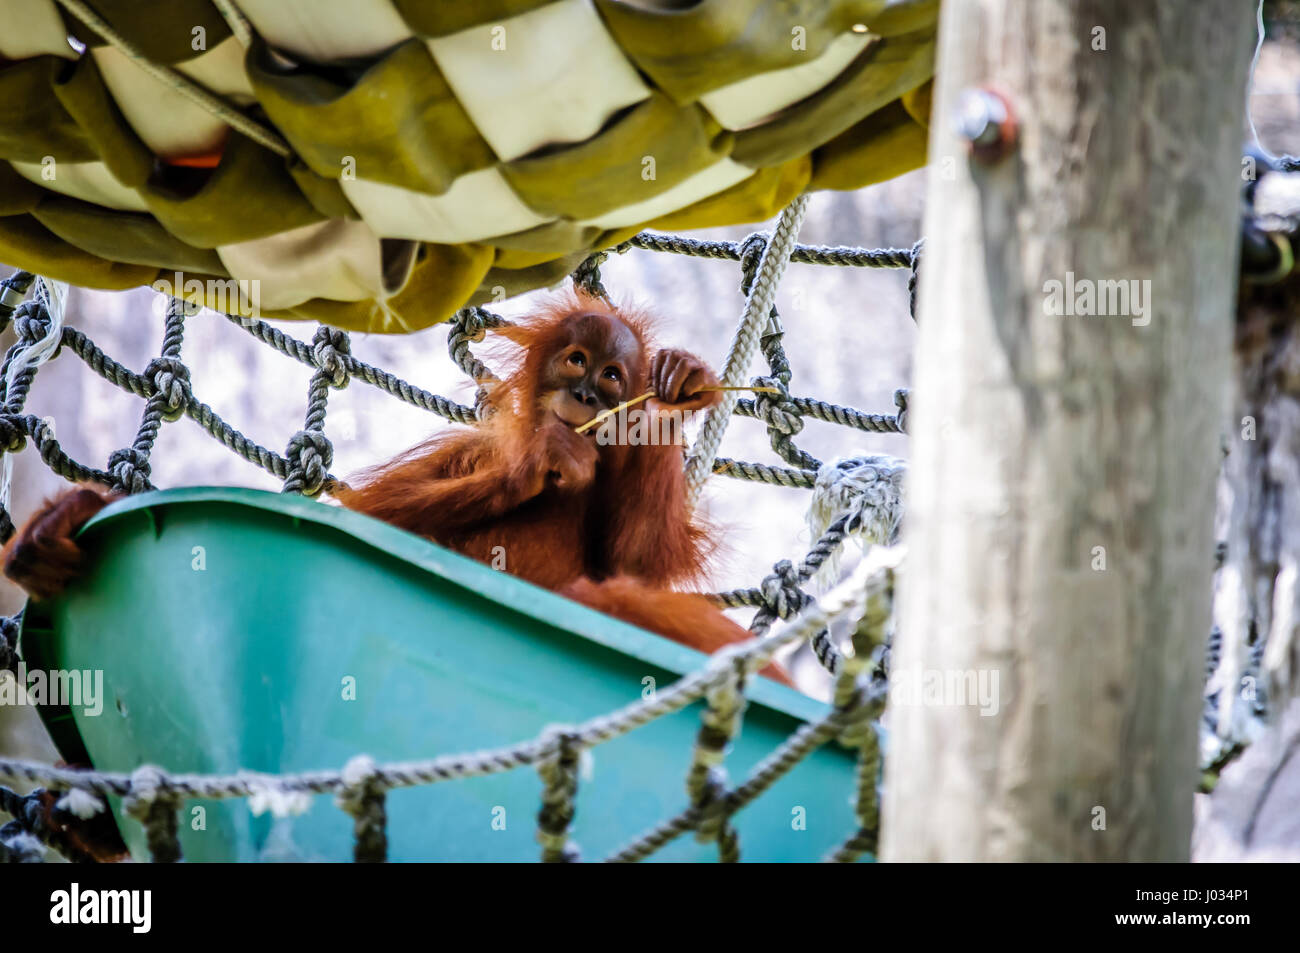 Carino baby orangutan in cattività in uno zoo Foto Stock